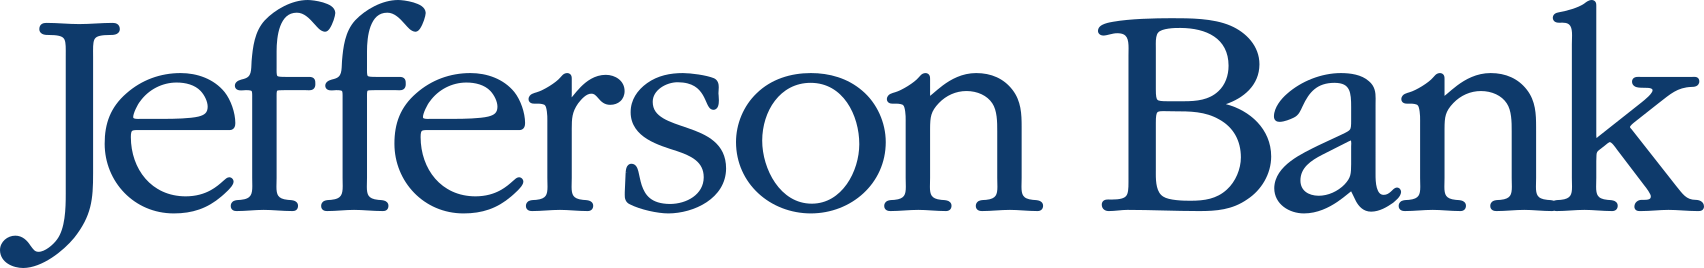 JeffersonBank-logo